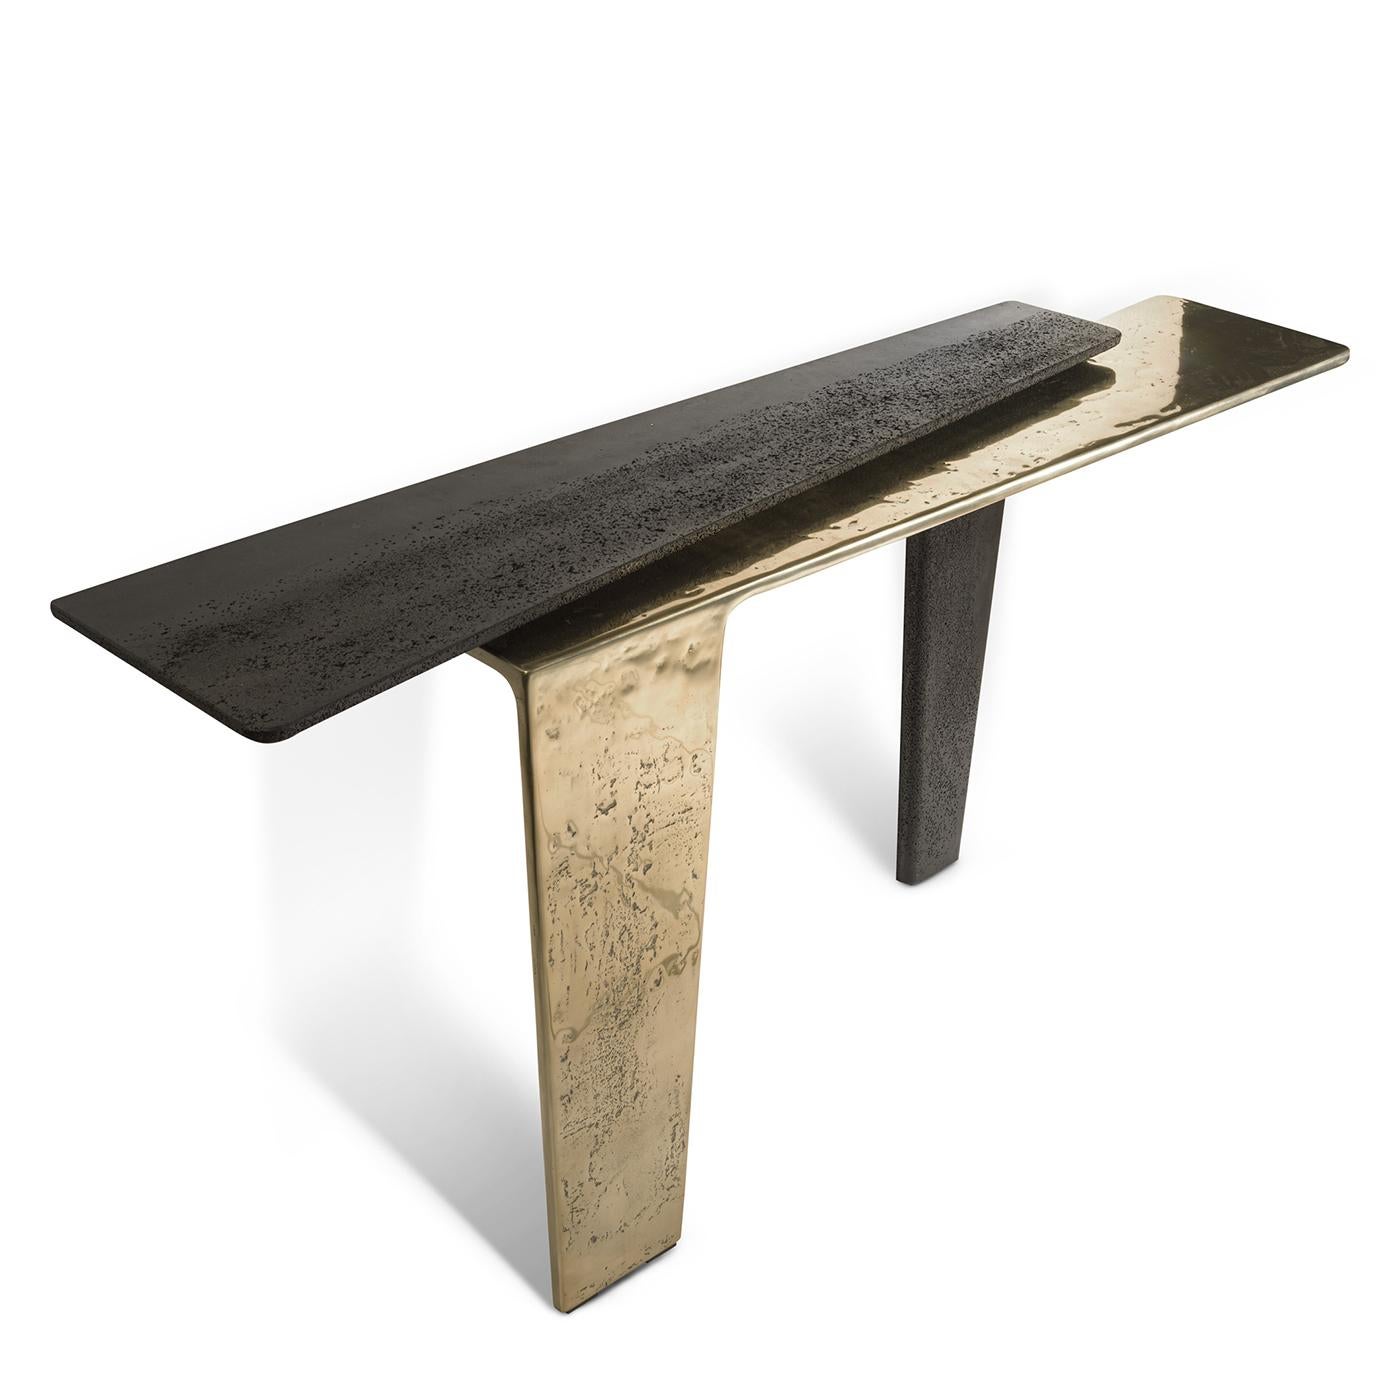 Table console Edena, une partie en fonte brute massive 
aluminium poli et laqué en finition or et 
l'autre partie en béton en finition noire mate.